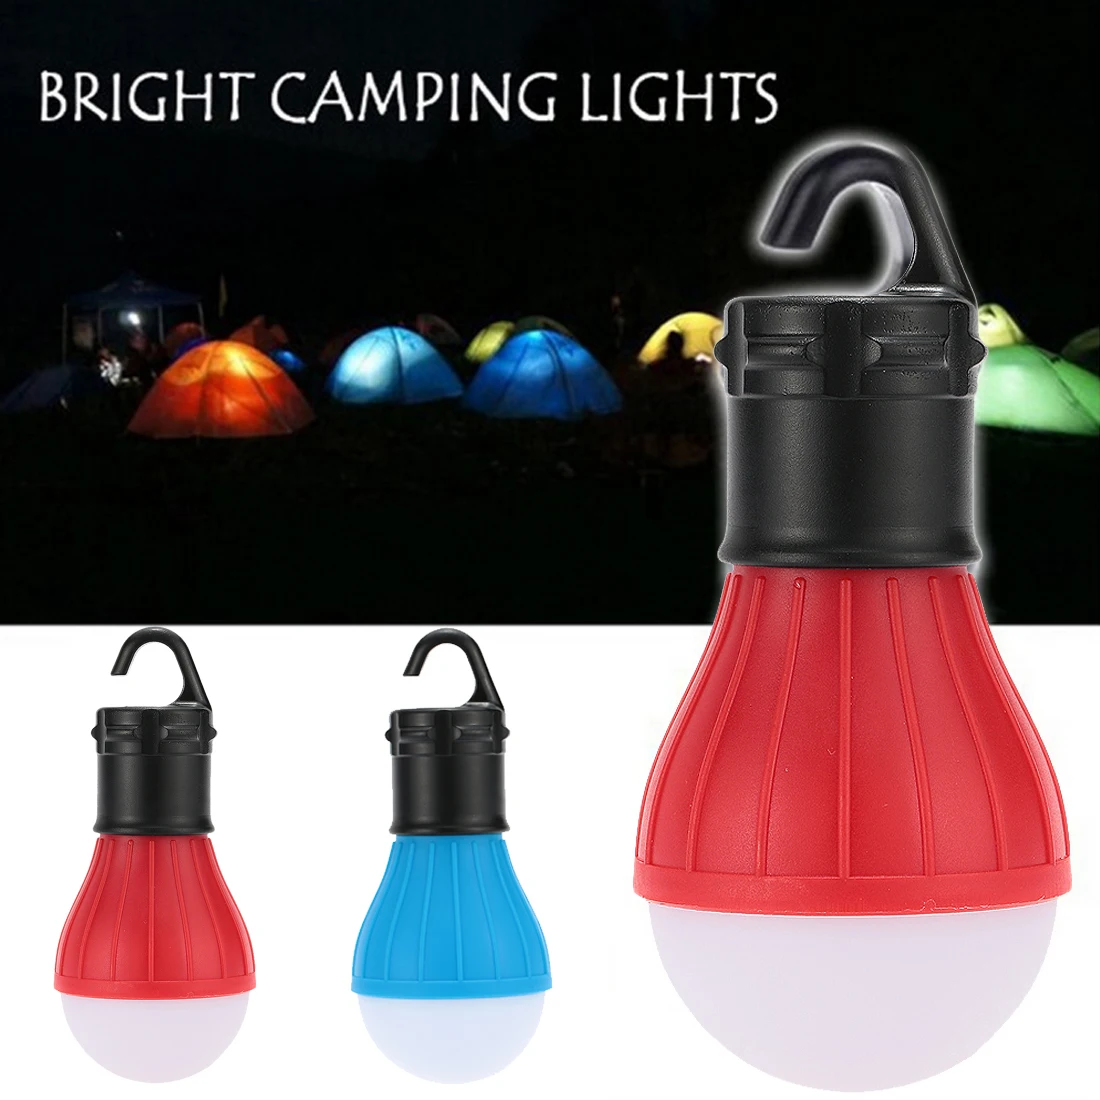 Мягкий свет уличный, подвесной, светодиодный кемпинг палатки лампочка Рыбалка Фонари лампа Портативный энергосберегающая лампа на солнечных батареях AAA батареи